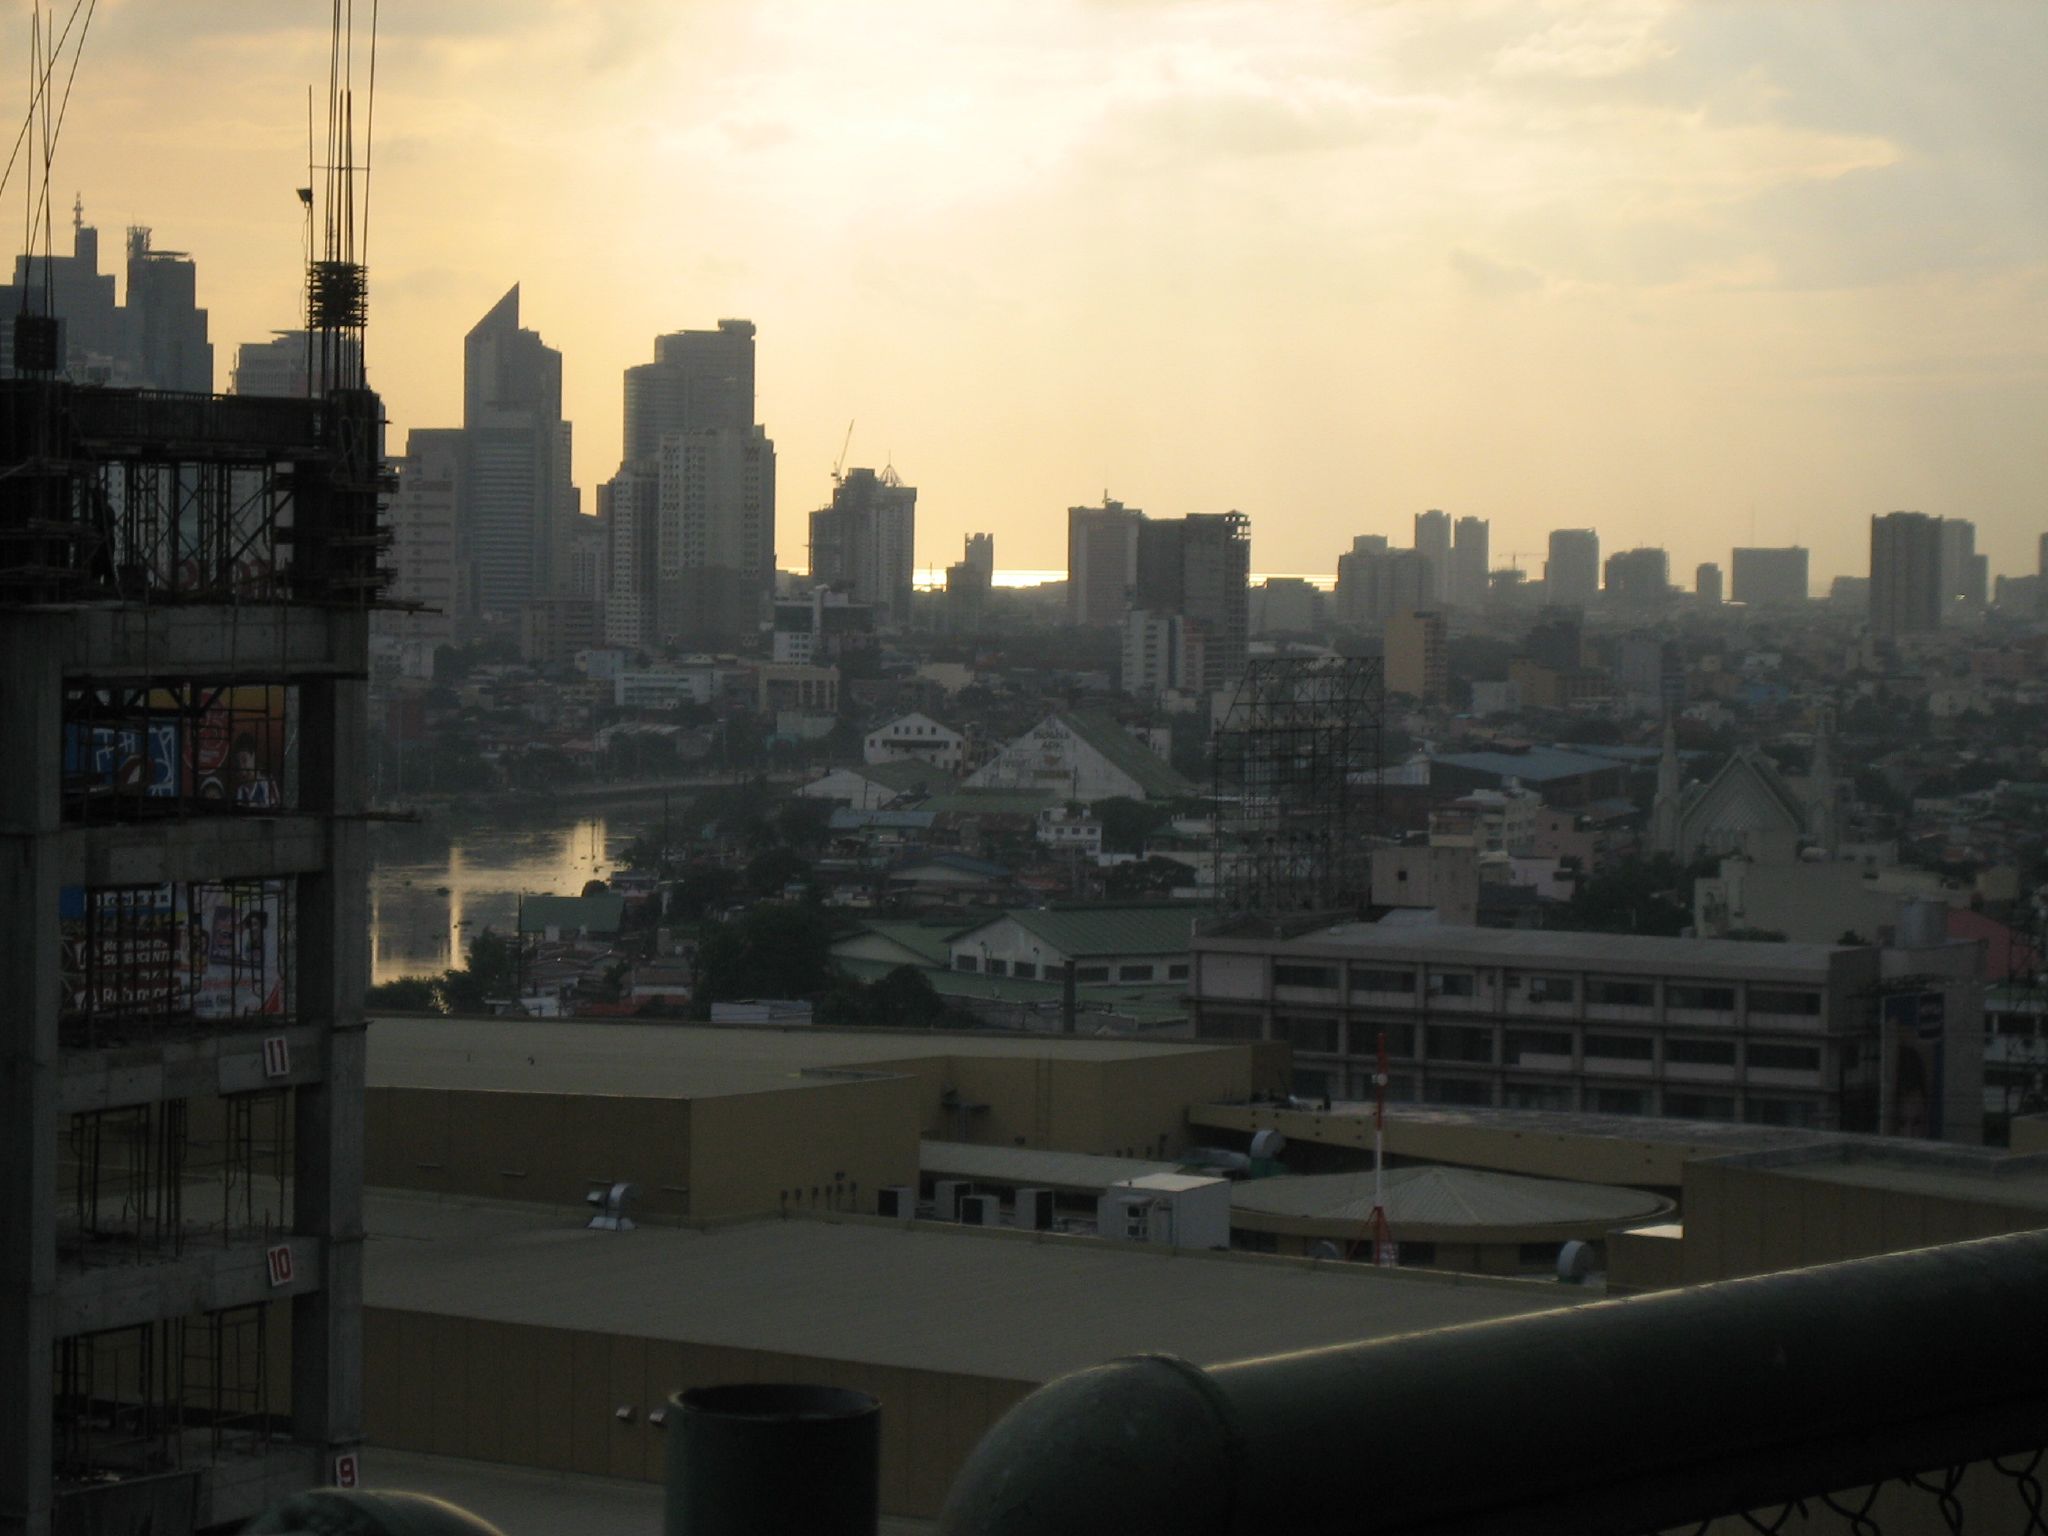 Manila City View